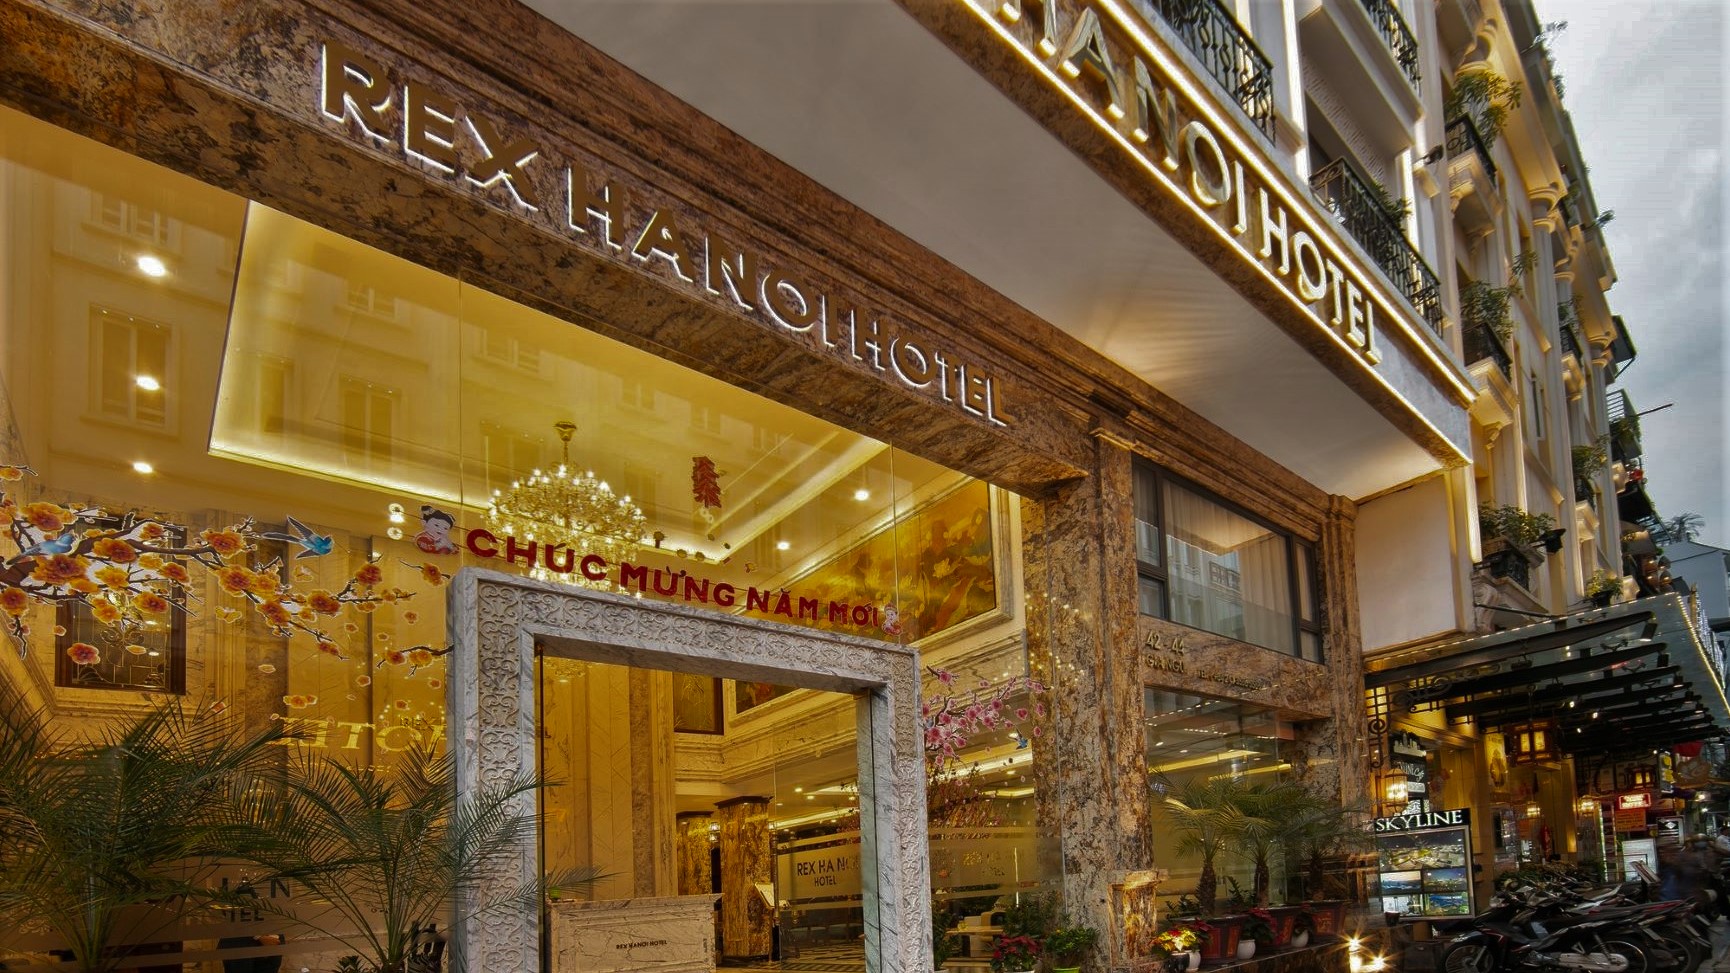 The Rex Hanoi Hotel